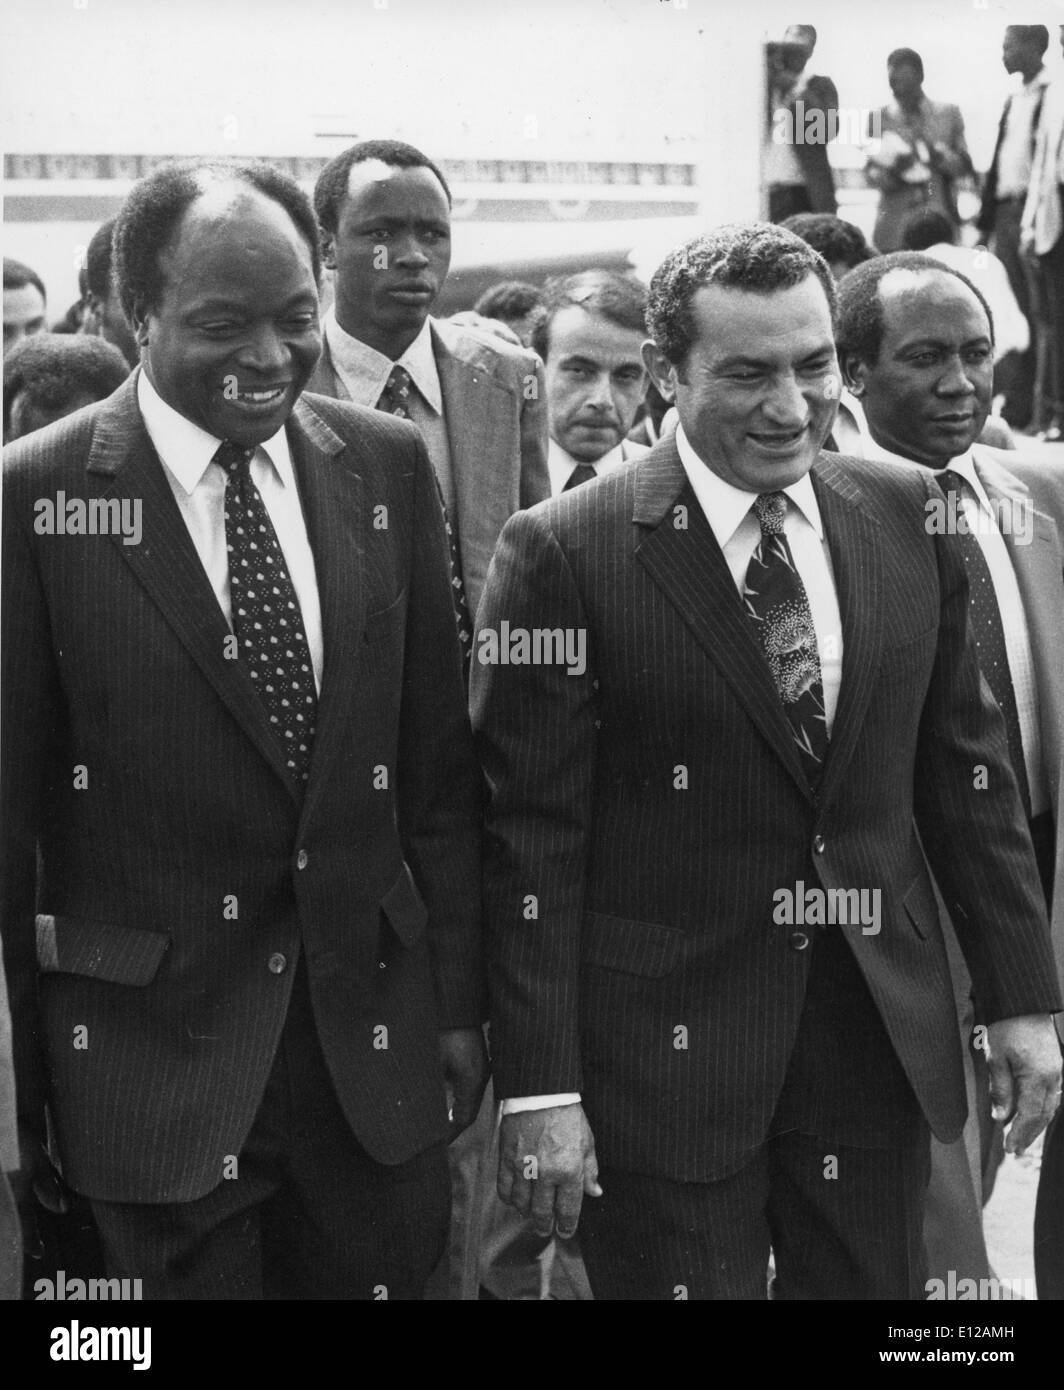 1. Februar 2011 - Nairobi, Kenia - ägyptischen Präsidenten HOSNI MUBARAK nicht in der Lage, eine Woche voller Unruhe und beispiellosen Protest gegen seine Regierung zu beruhigen angekündigt Dienstag Abend, er nicht, Wiederwahl versuchen würde, aber angedeutet, dass er an der Macht bleiben würde, "für die nächsten paar Monate." Die nächste Wahl ist für September geplant. Im Bild: C. 1980 mit Vice Präsident MWAI KIBAKI in Nairobi, Kenia Stockfoto